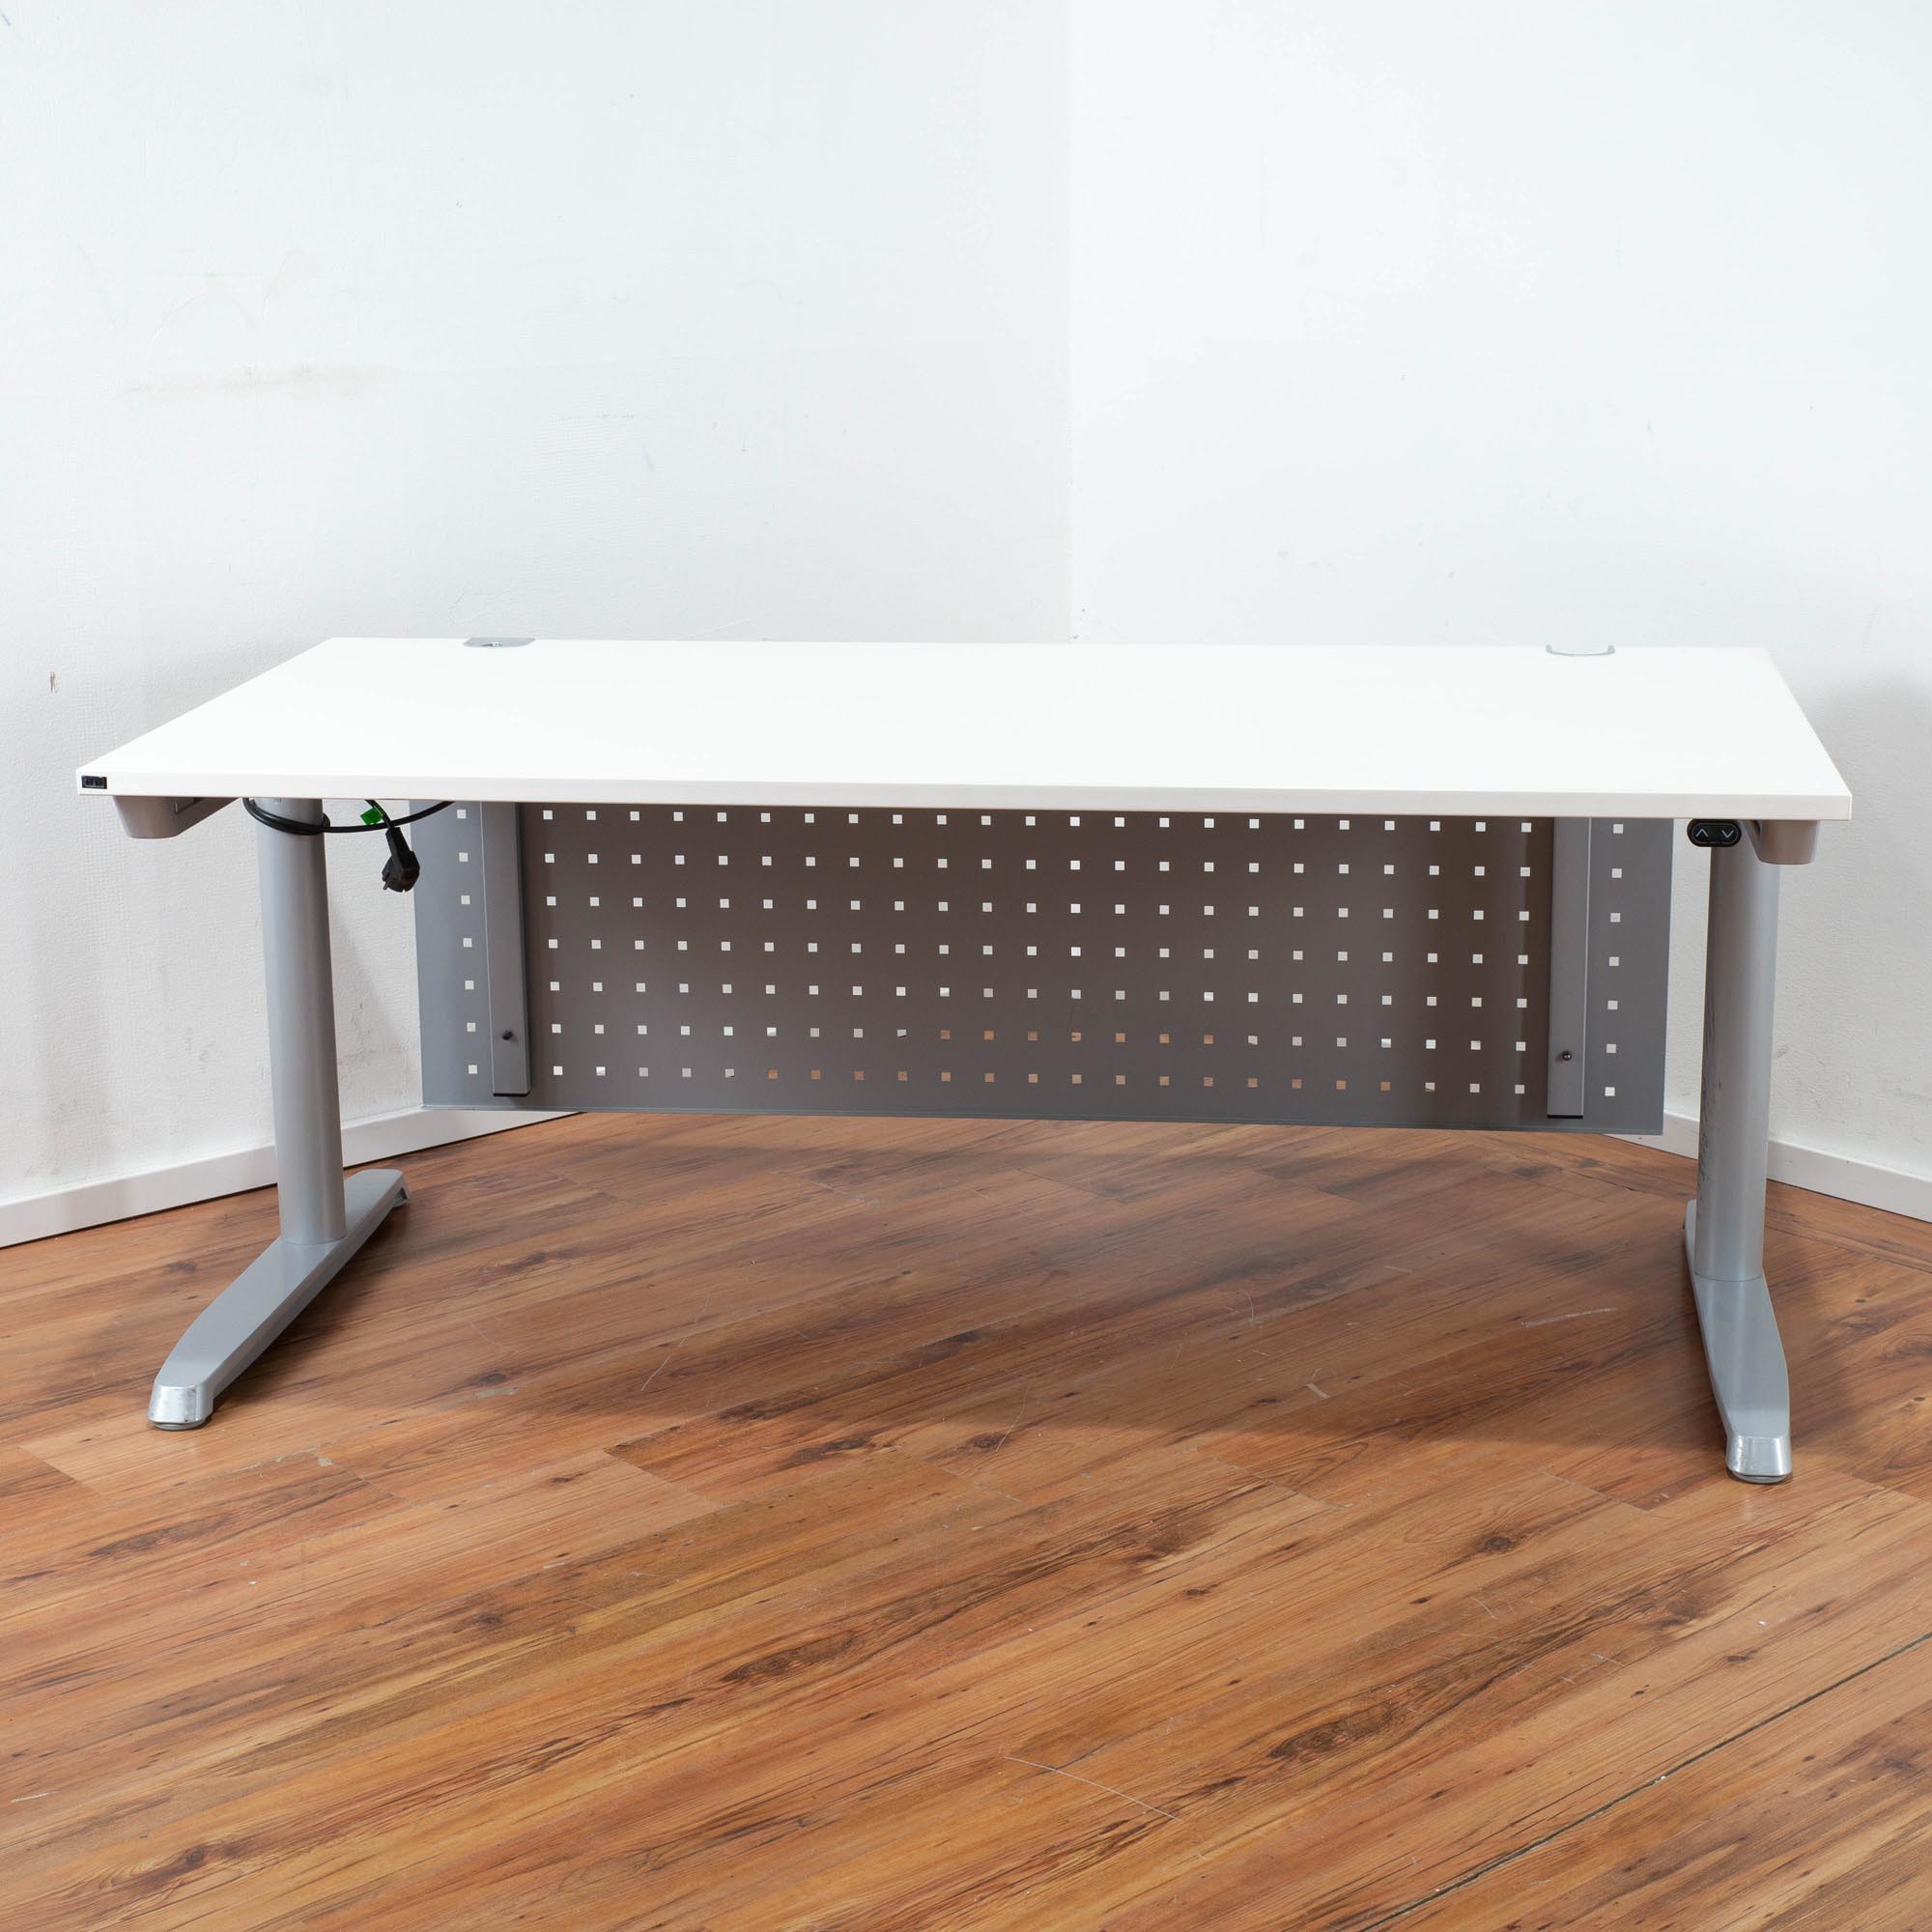 Hund E-Schreibtisch weiße Platte - 160 x 80 cm - T-Fußgestell Silber - Sichtblende gelocht 